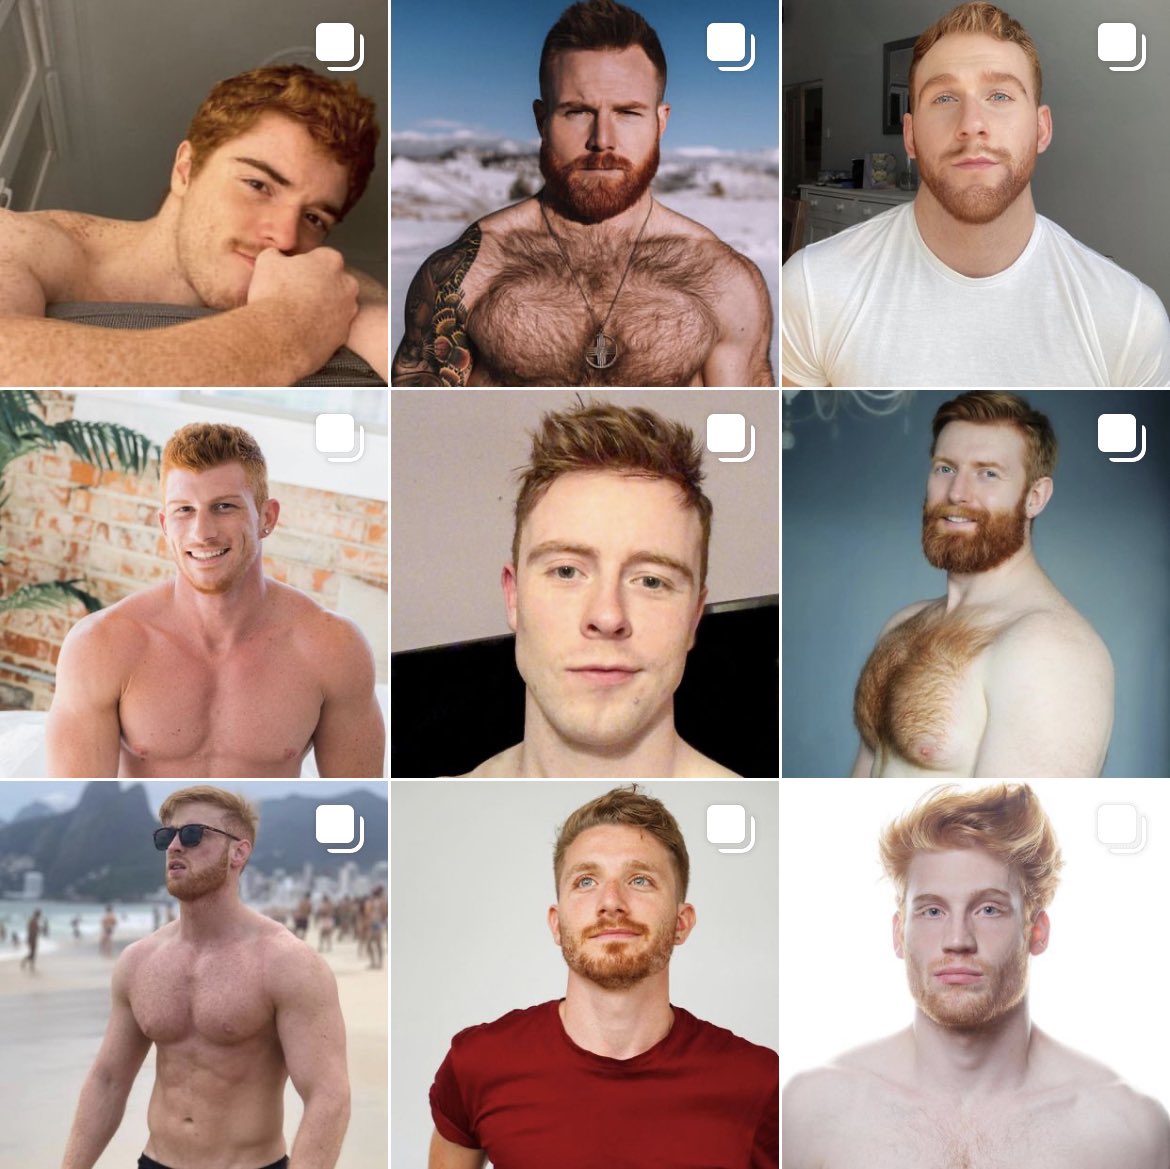 Ginger men hot 10 Hot